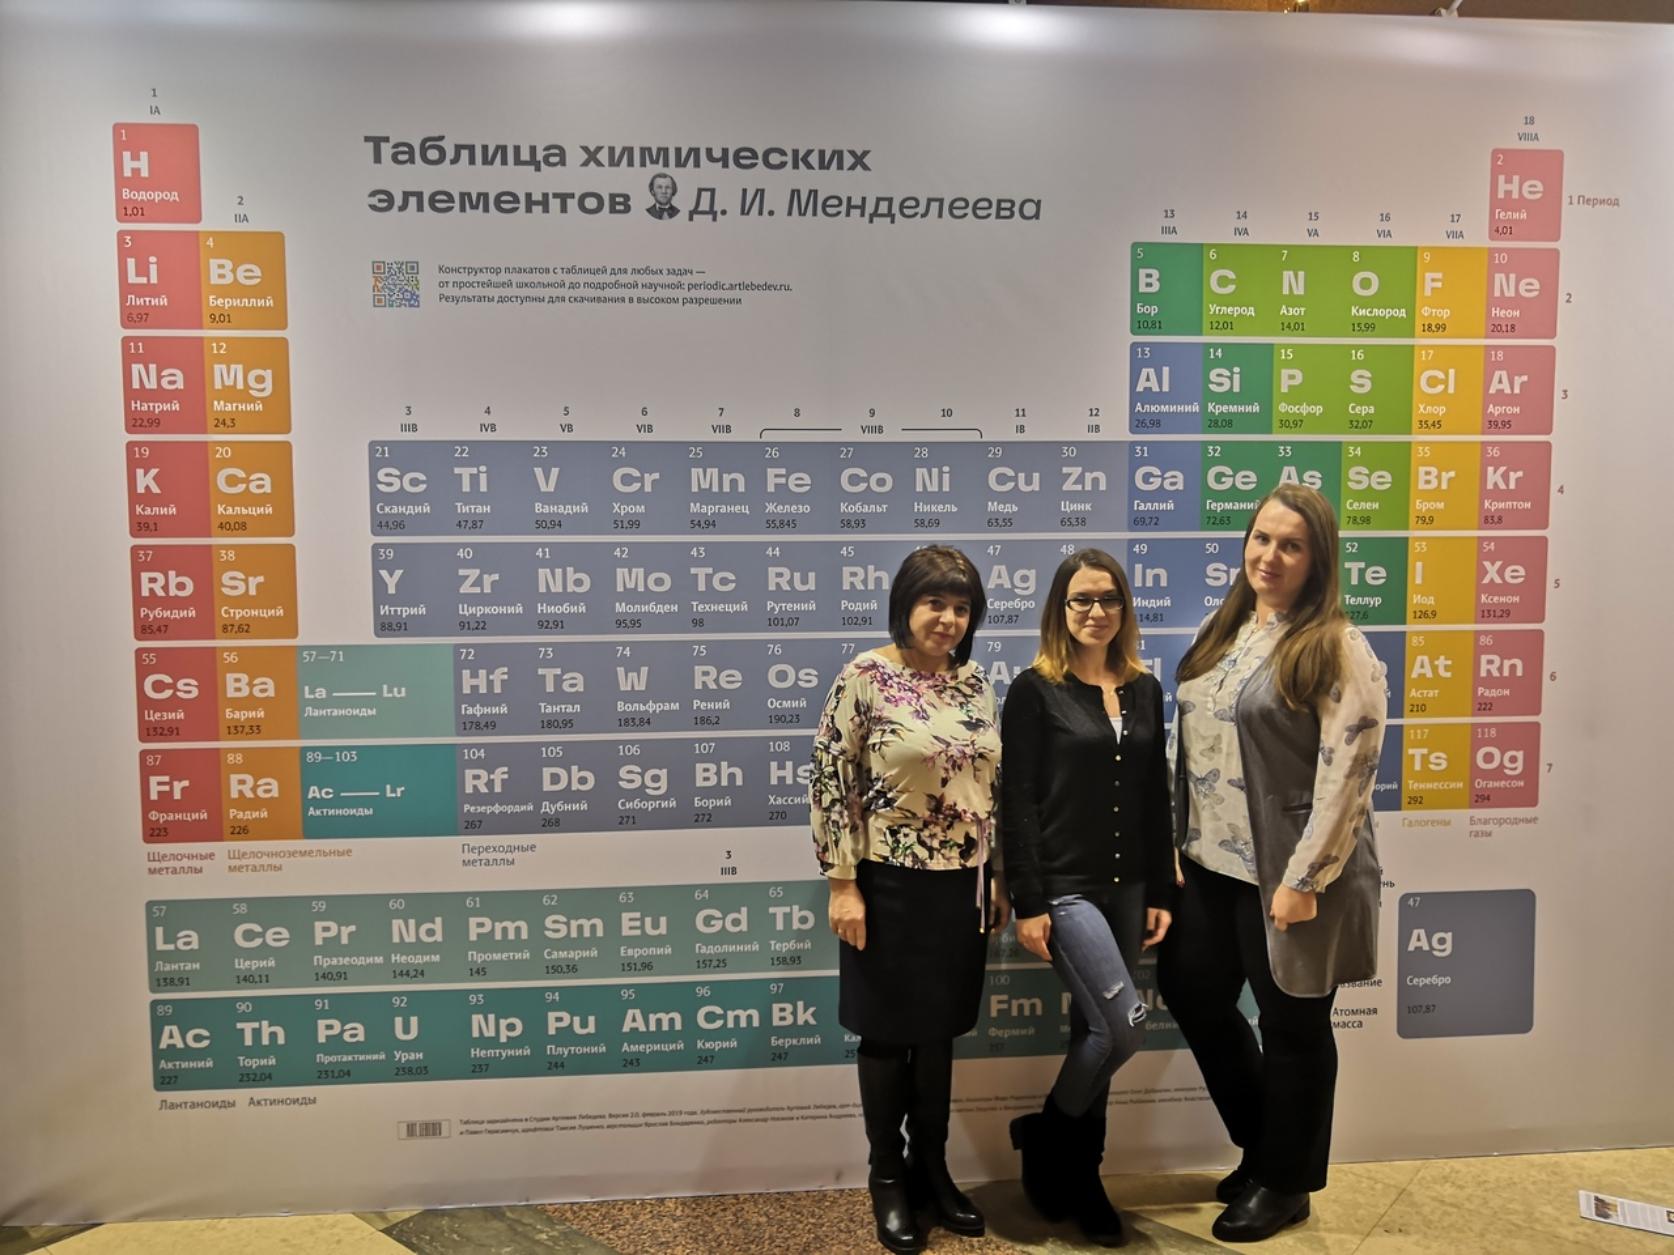 Химики из ЮЗГУ отметили юбилей Периодической таблицы в Москве